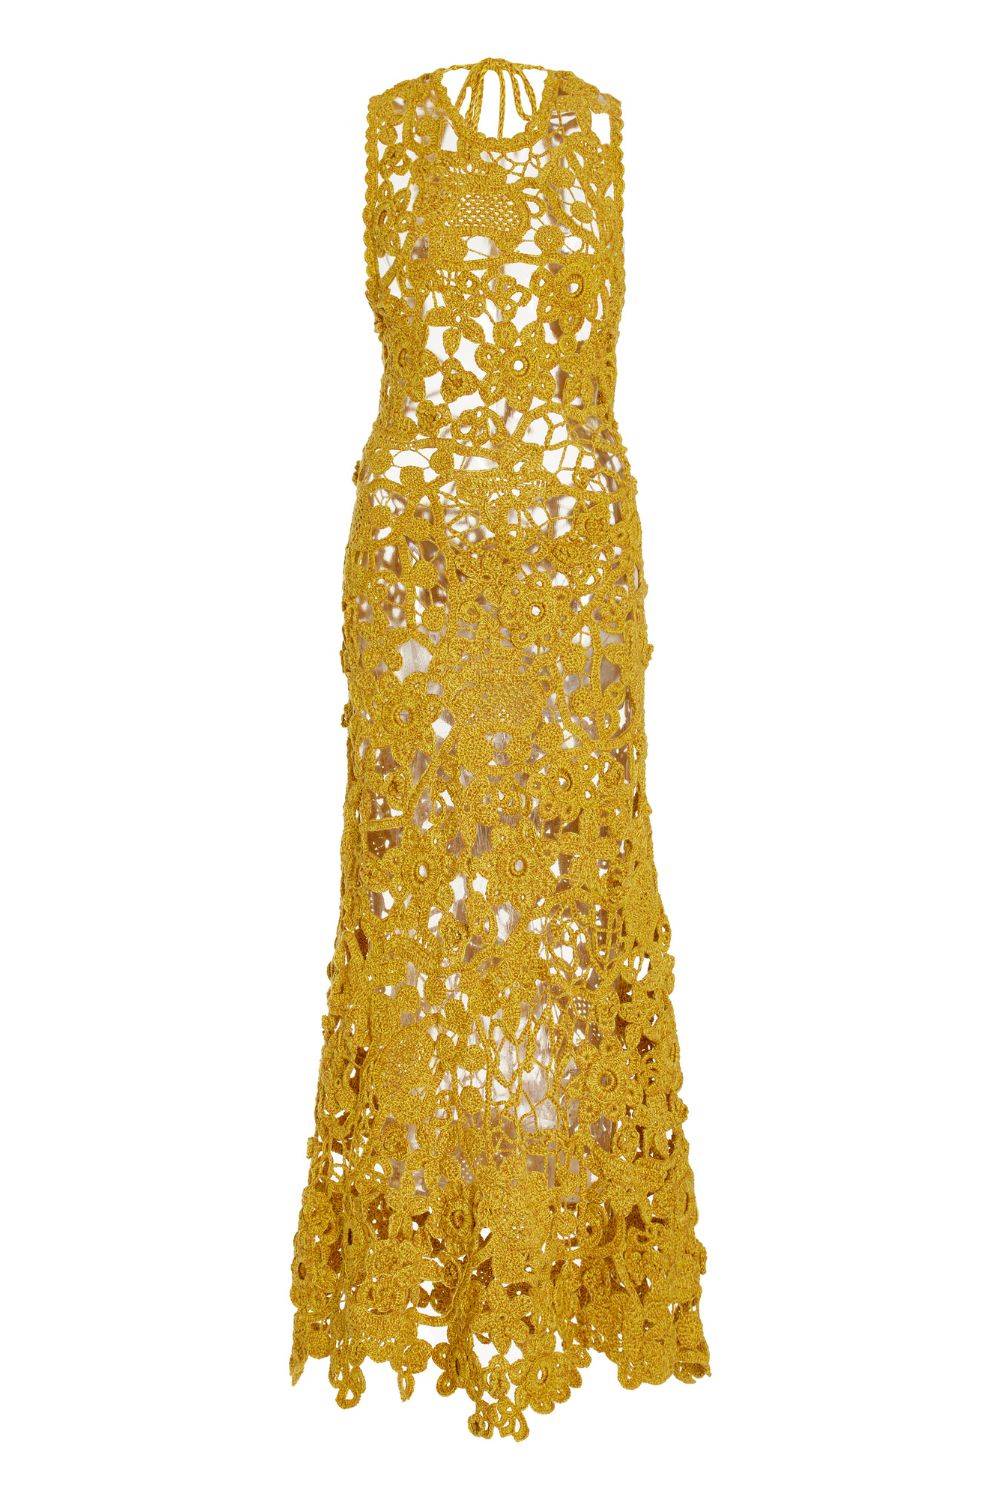 Elegancka sukienka na wakacje, Ulla Johnson, przeceniona na ok. 4160 zł (Fot. materiały prasowe)